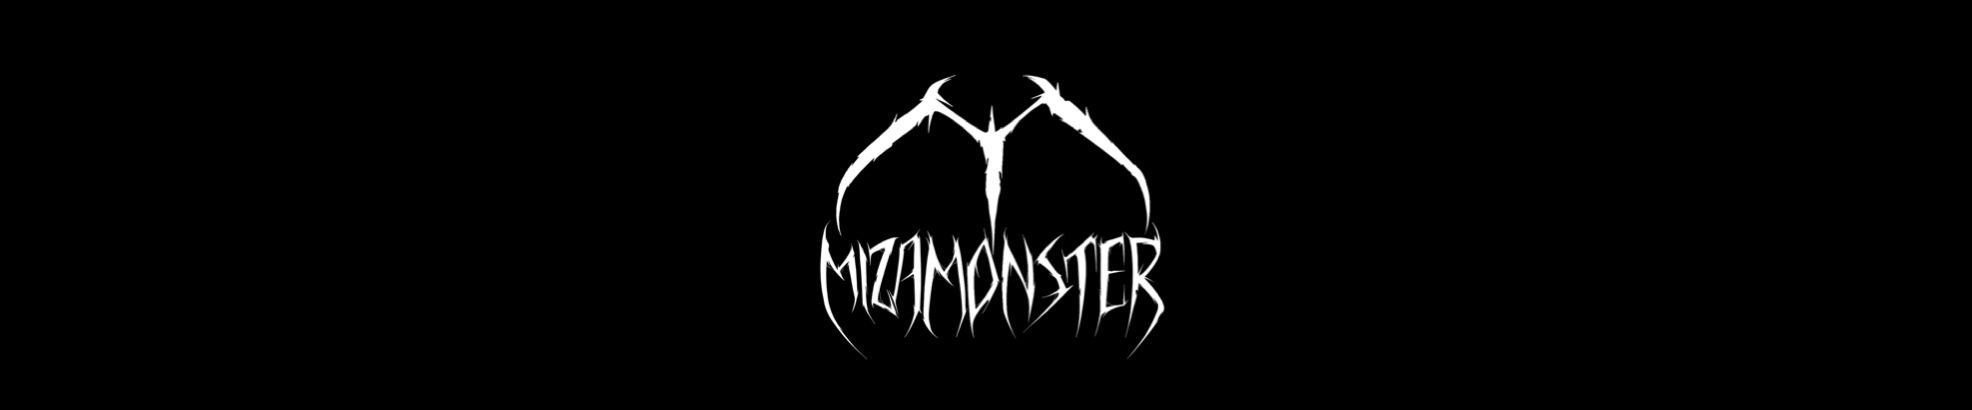 Miza Monster's profile banner